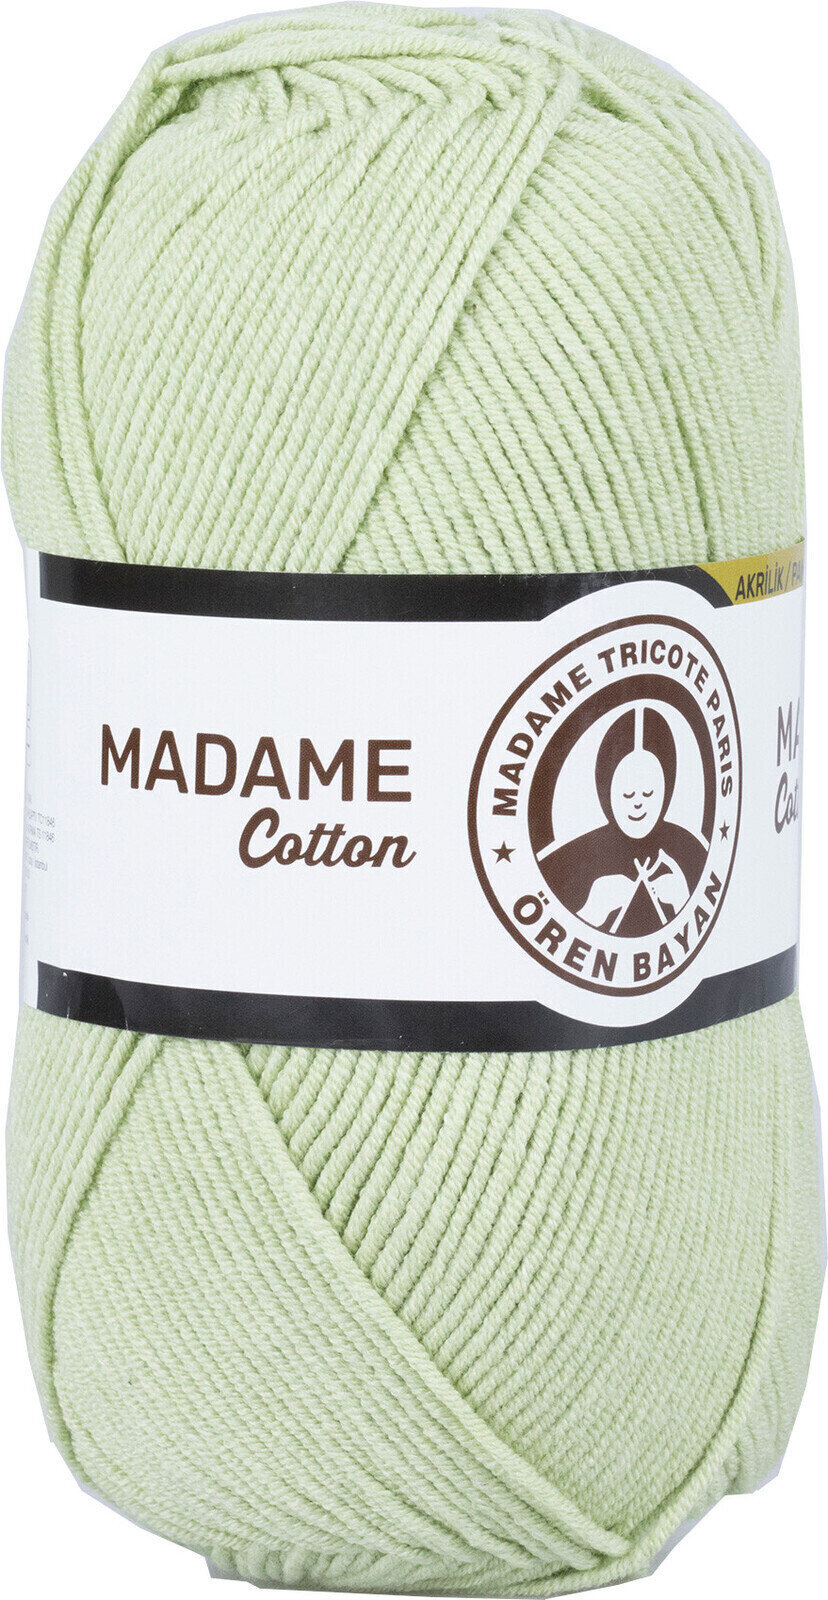 Νήμα Πλεξίματος Madame Tricote Paris Madame Cotton 019 Light Green